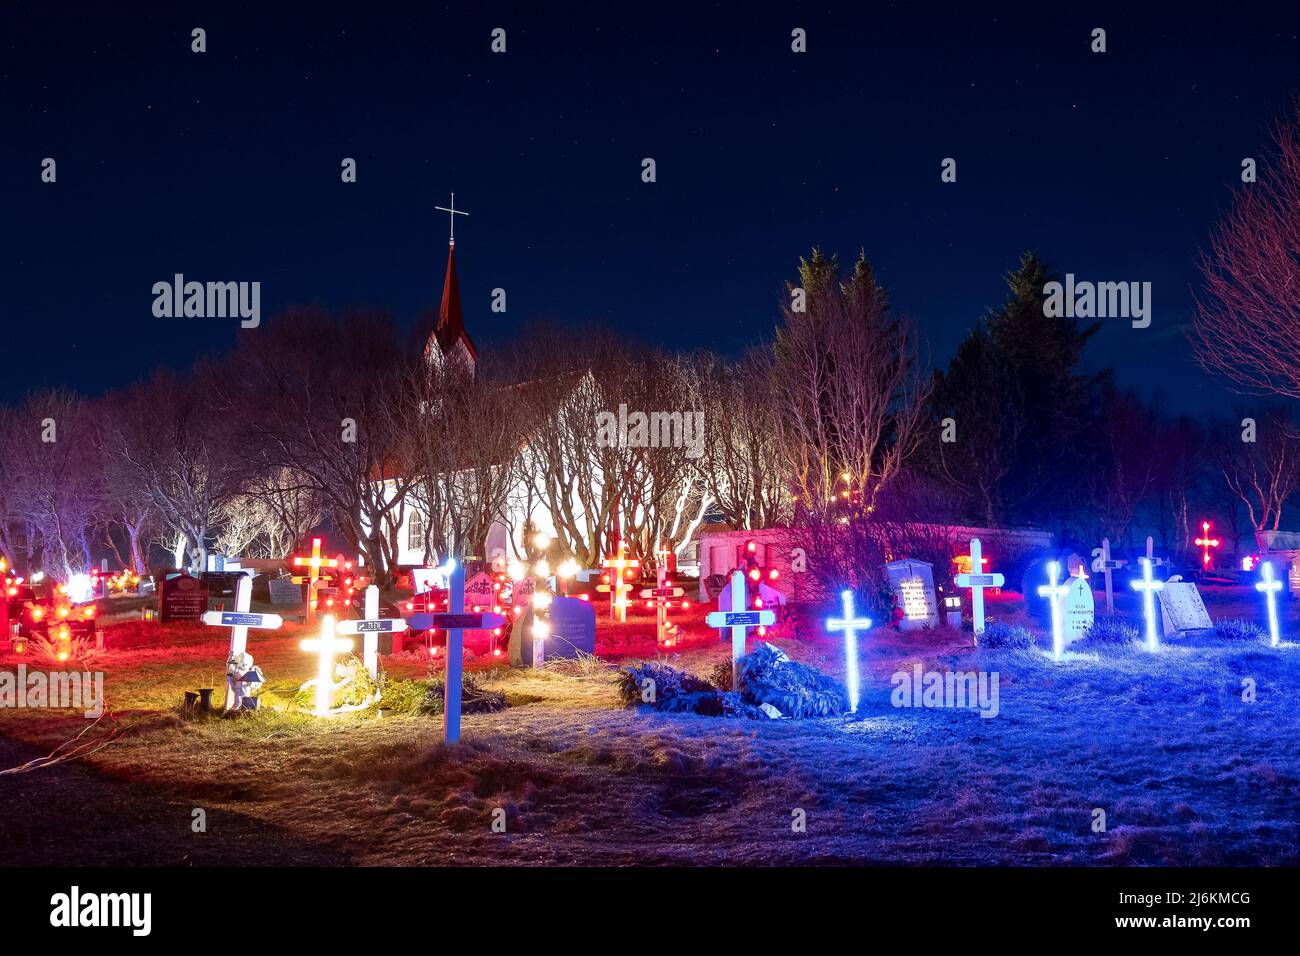 Kotstrandarkirkja in der Vorweihnachtszeit mit winterlicher Grabbeleuchtung - Kotstrandarkirkja in winter (December) with illuminated graves Stock Photo